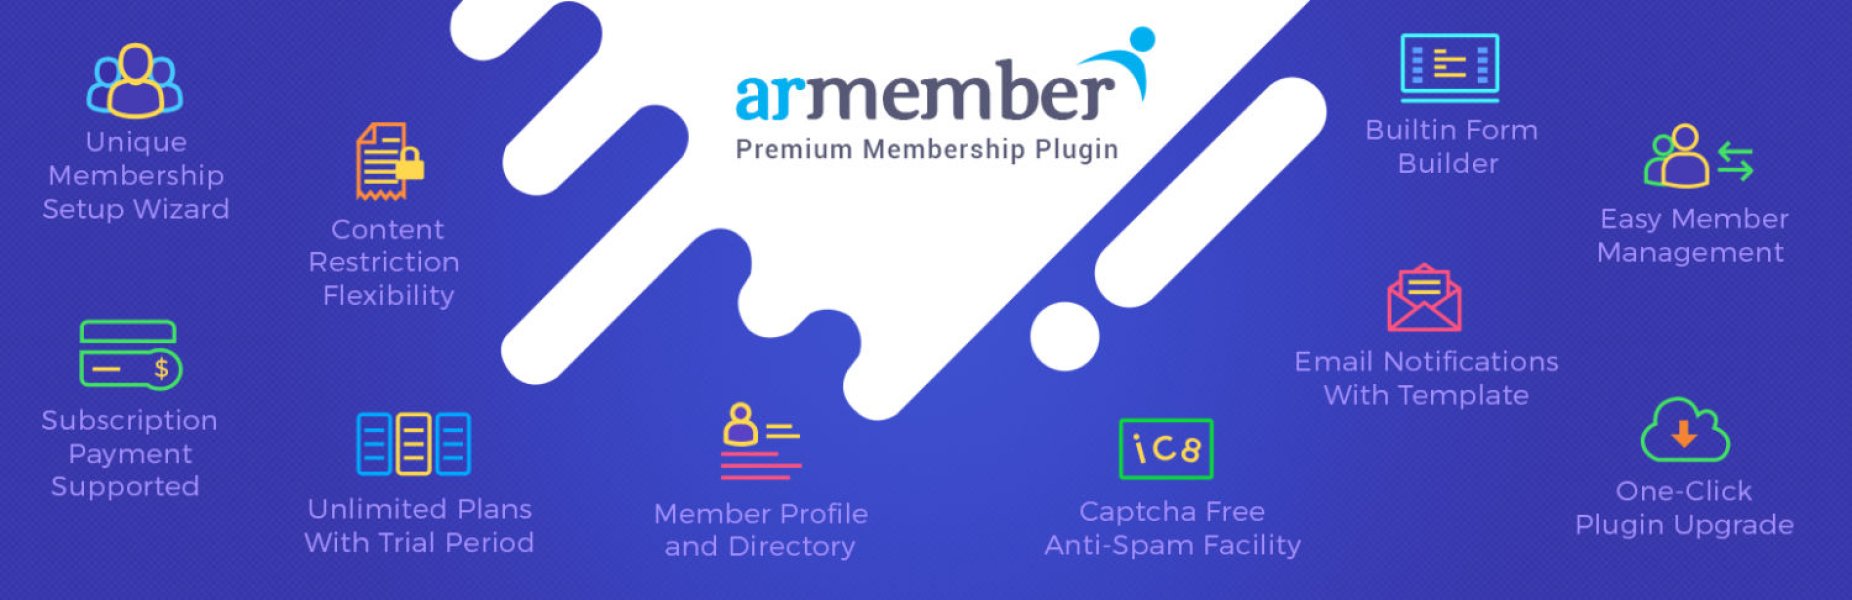 Group/Umbrella Membership for ARMember